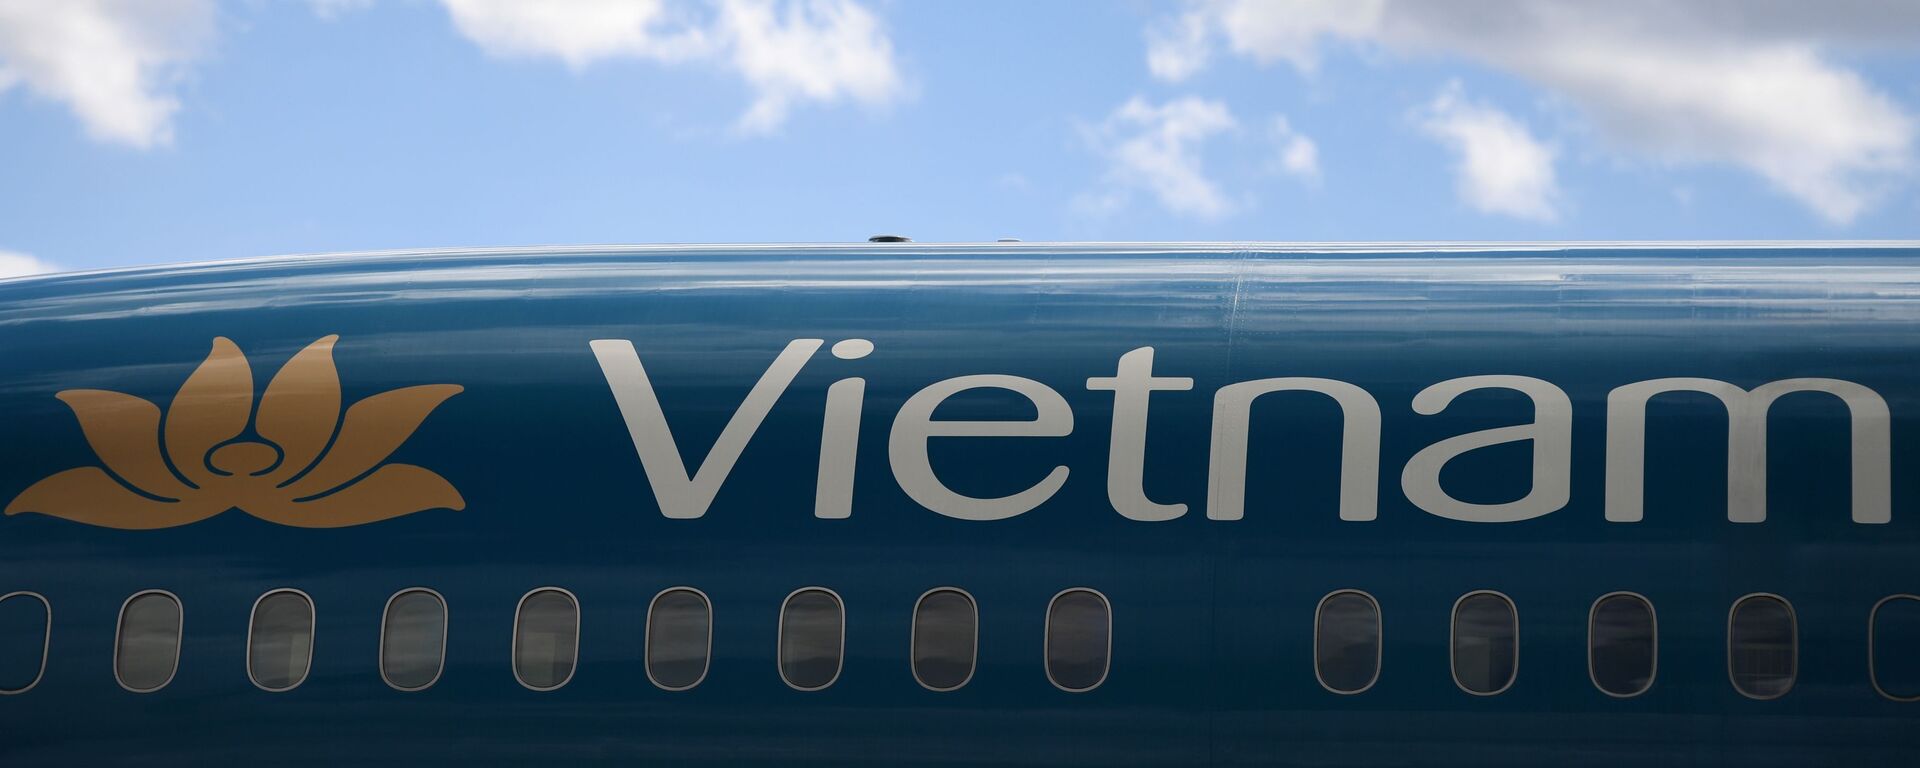 Máy bay của hãng Vietnam Airlines tại sân bay quốc tế “Sheremetyevo” - Sputnik Việt Nam, 1920, 25.03.2023